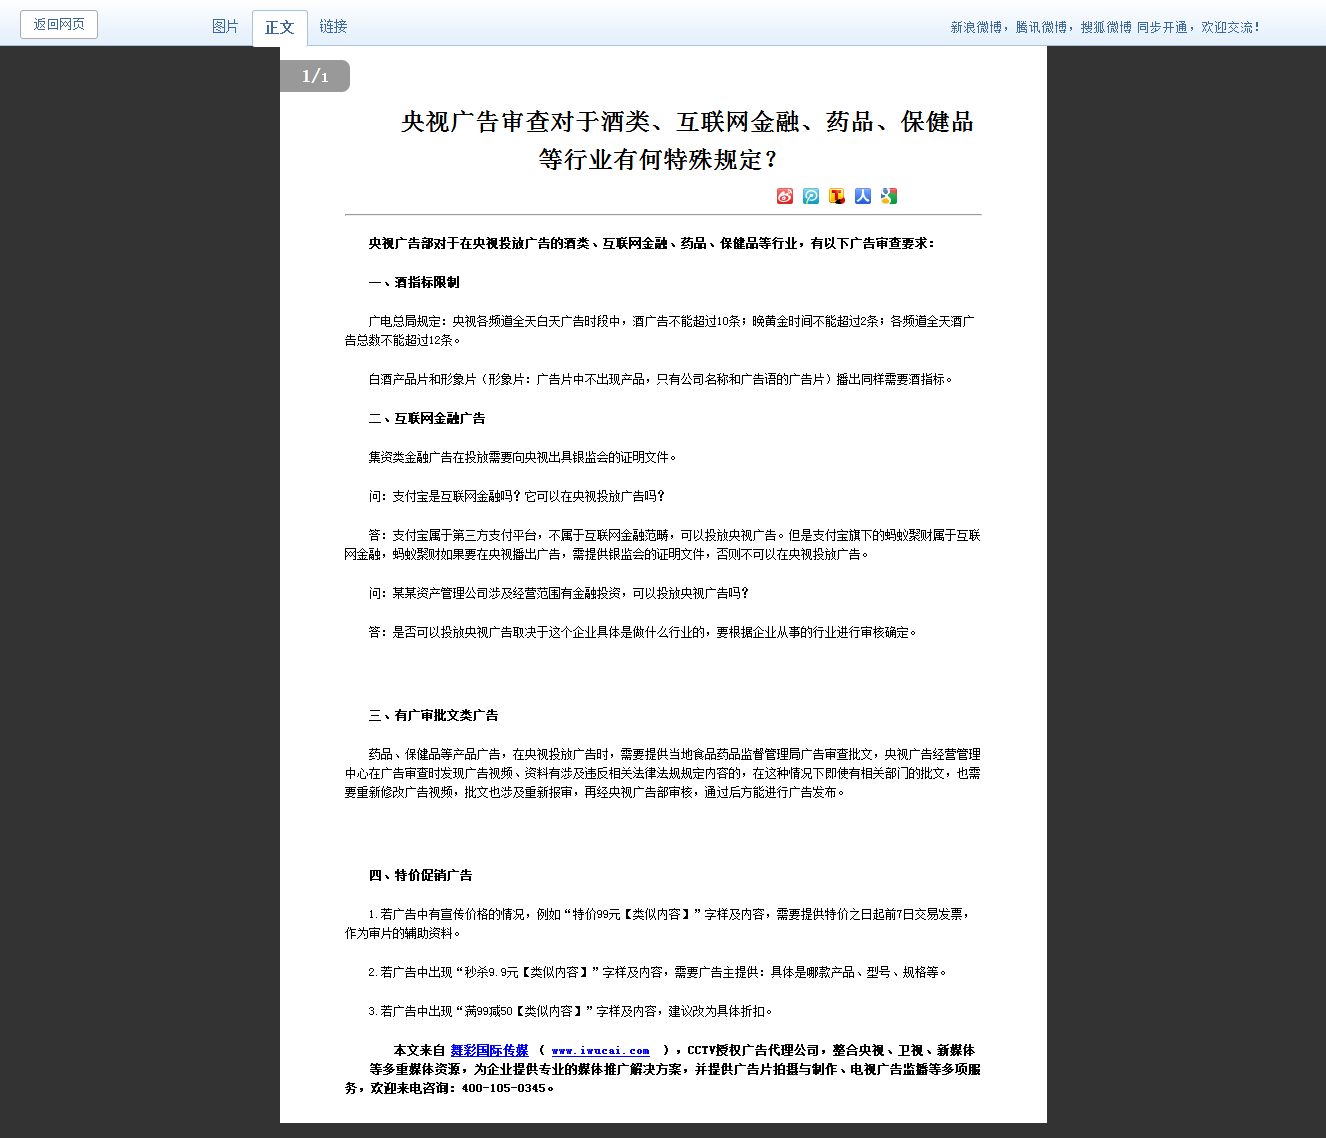 河南电视台广告部广告审查对于酒类、互联网金融、药品、保健品等行业有何特殊规定？